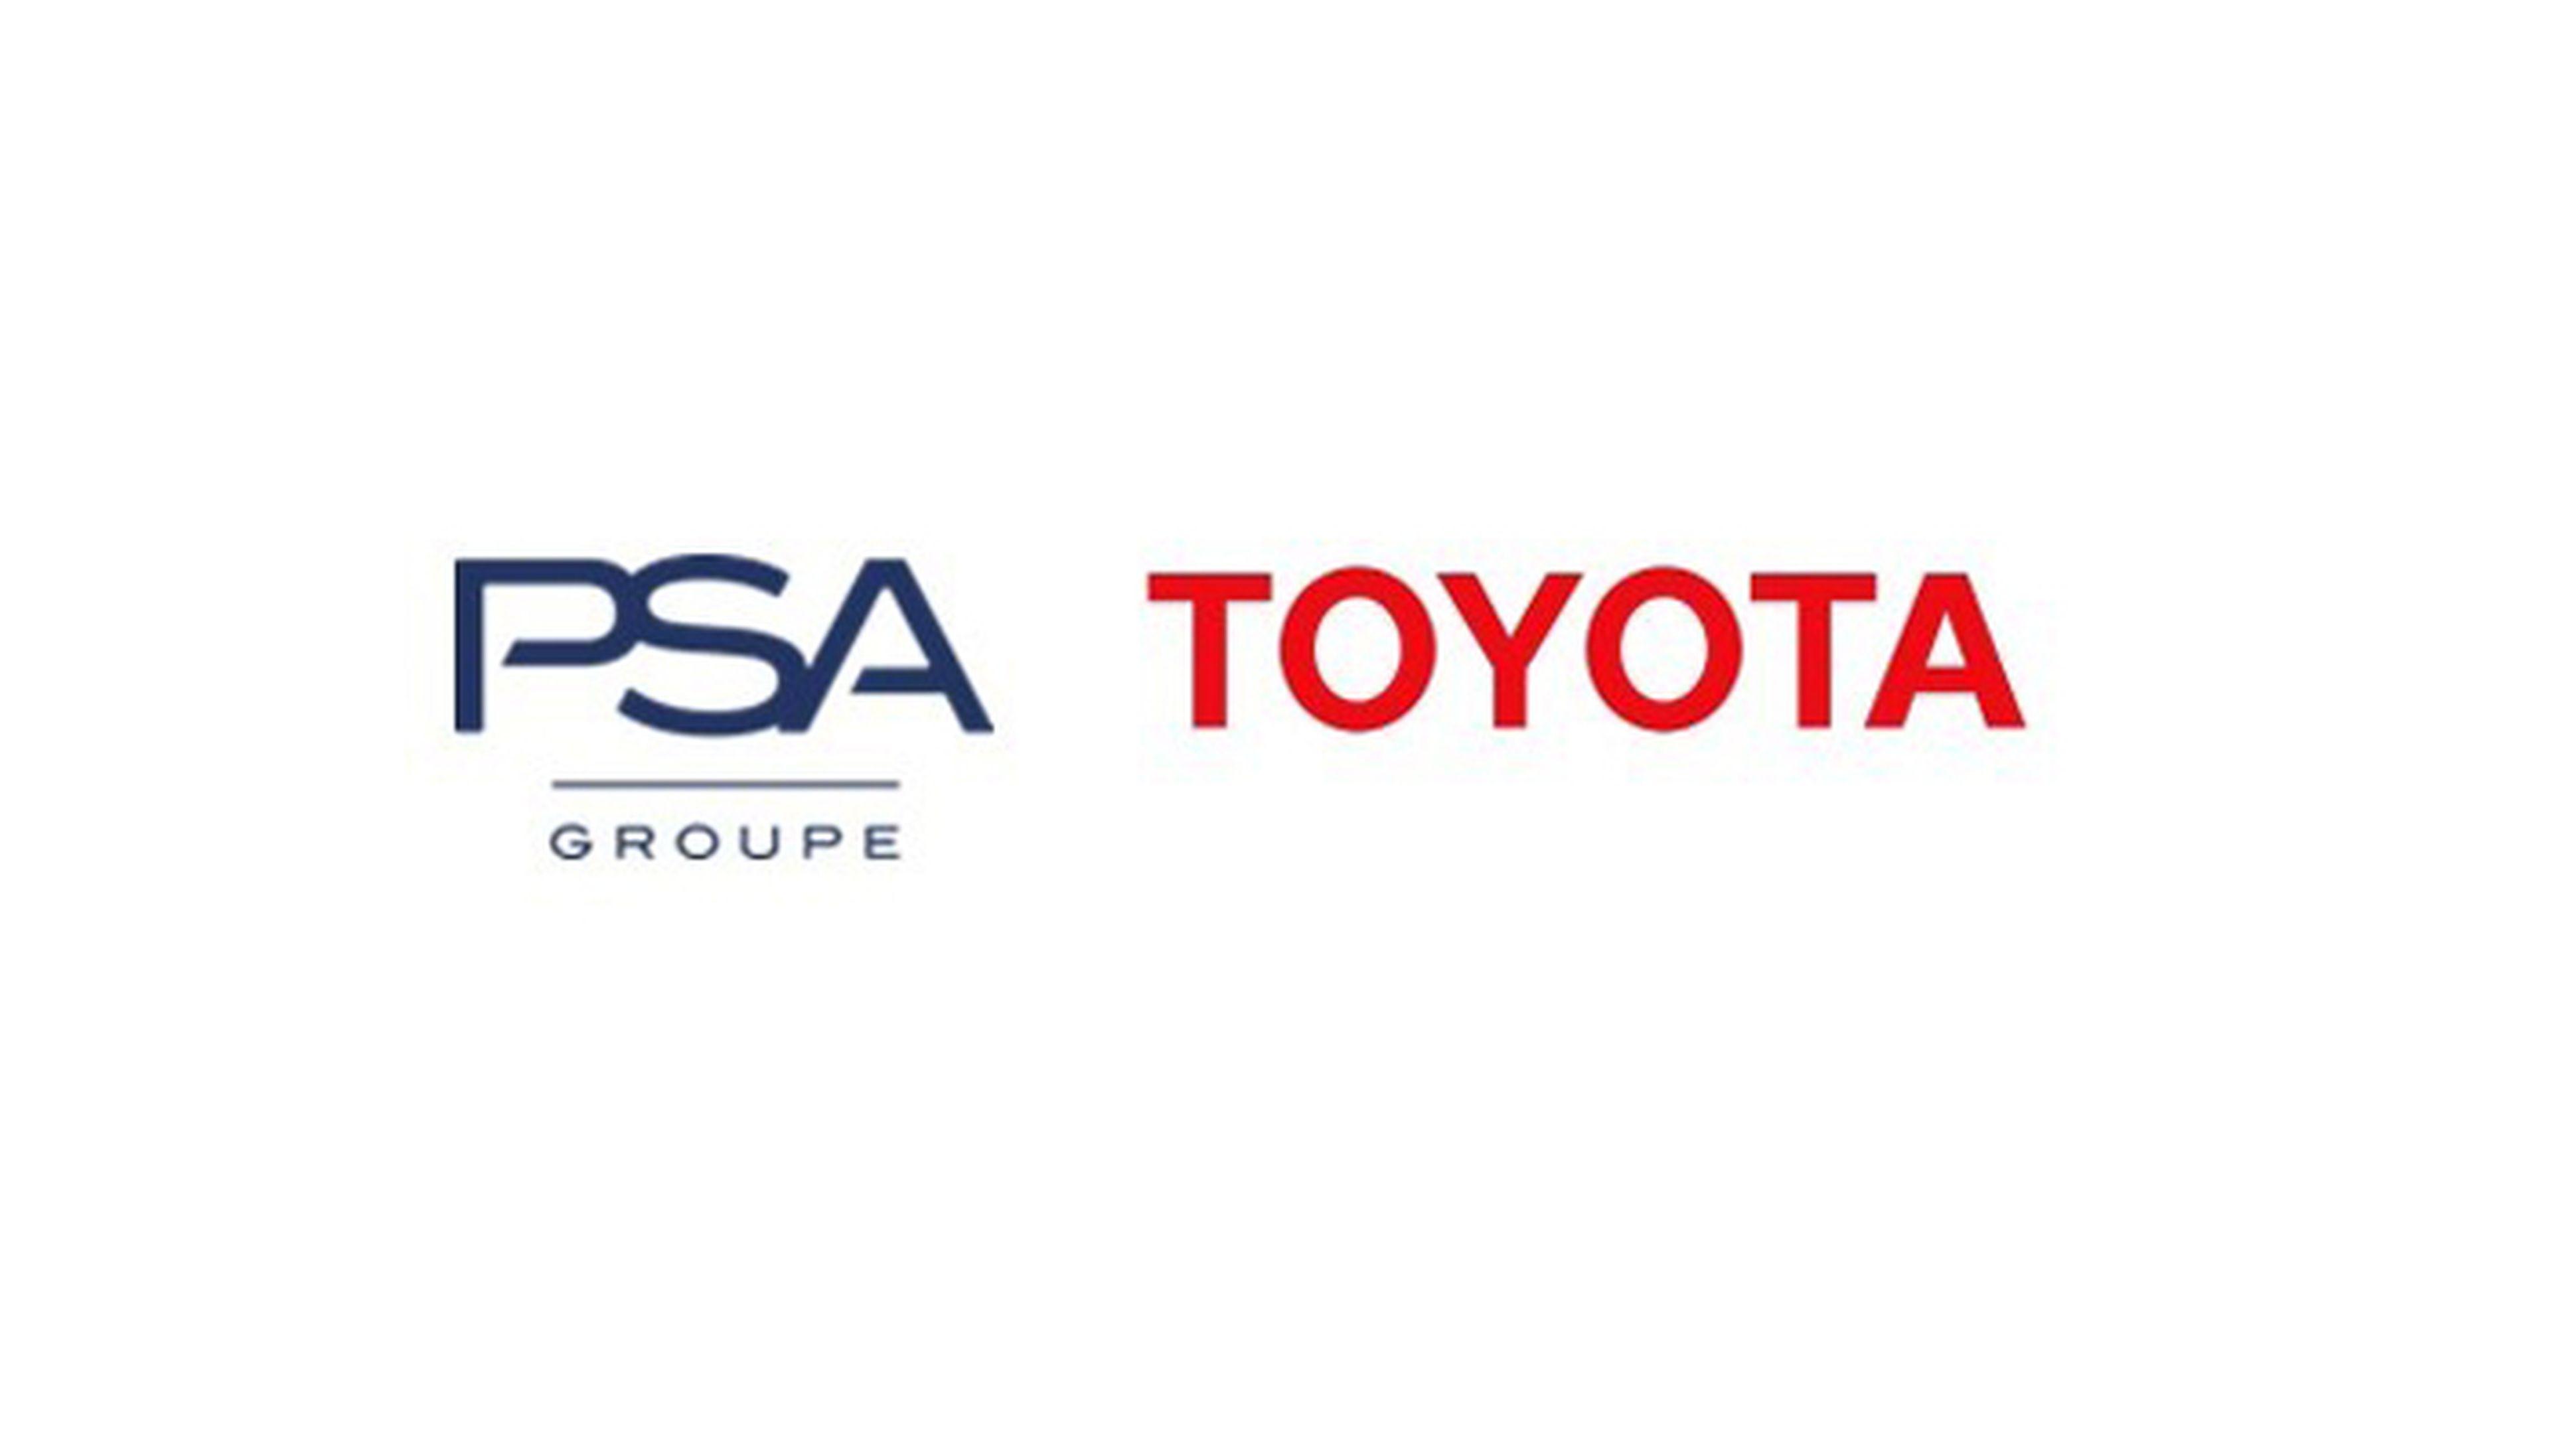 Groupe PSA y Toyota abren un nuevo capítulo de su asociación a largo plazo en Europa